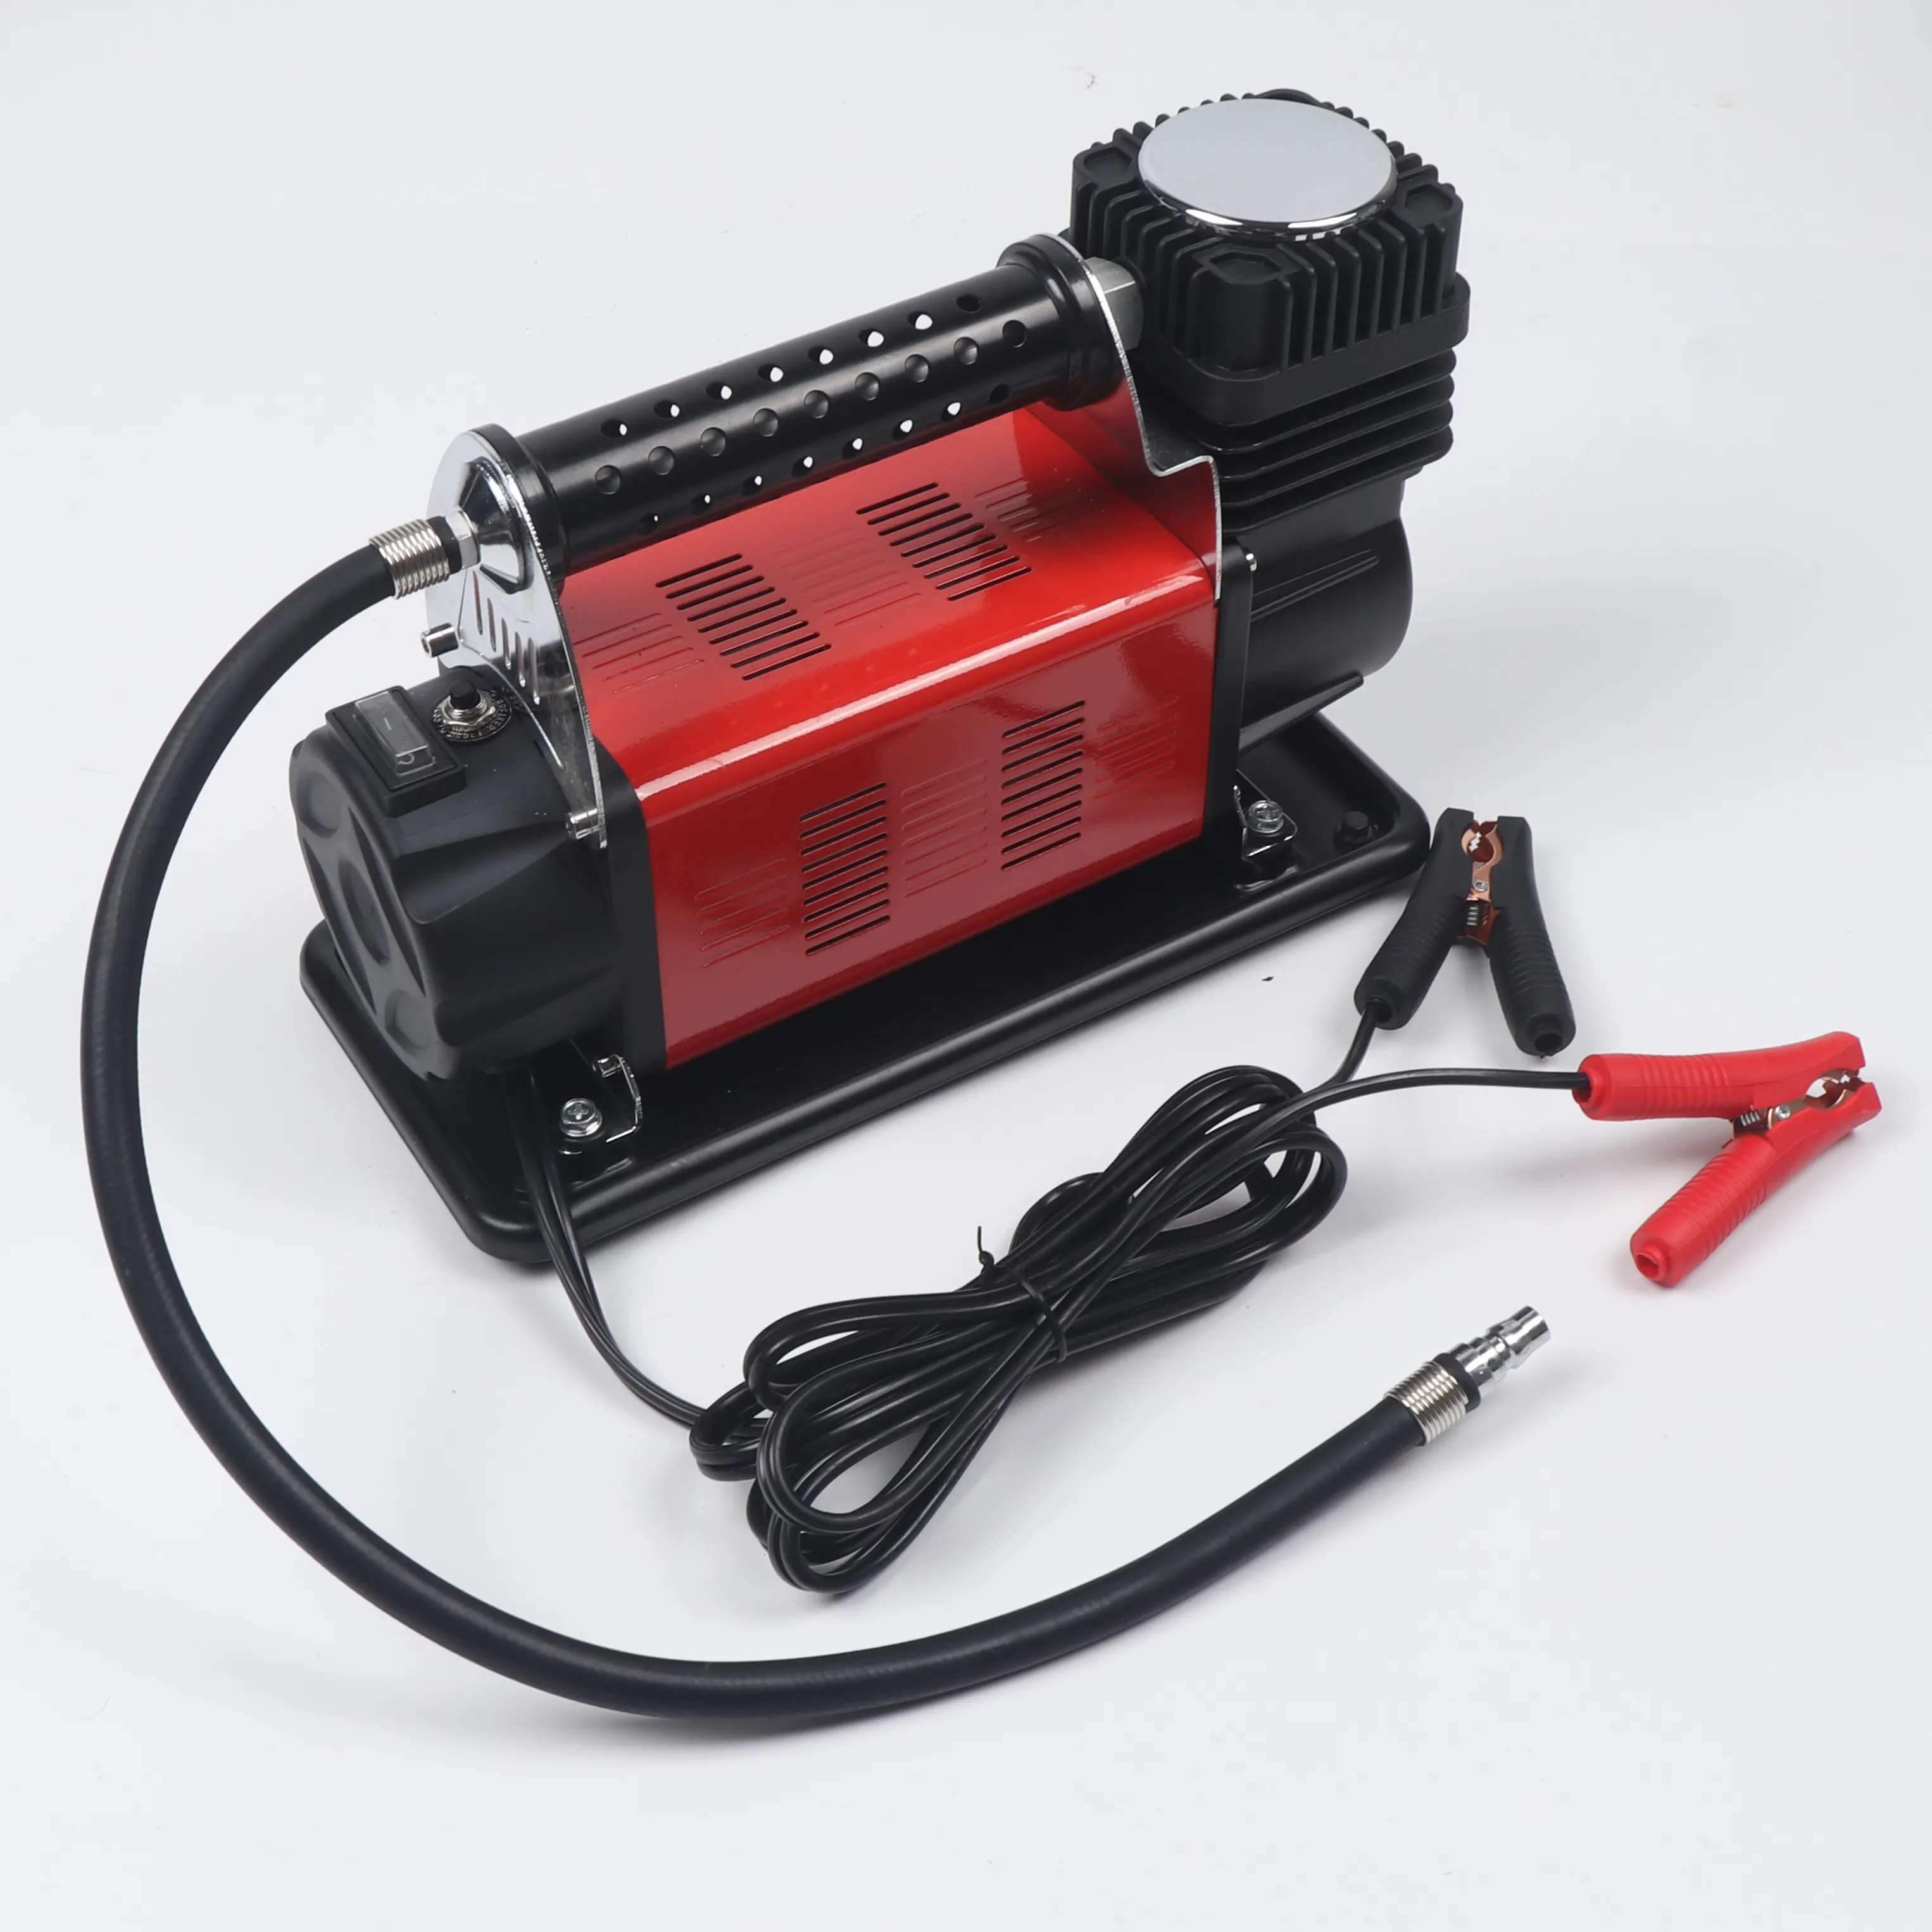 Pompa di aria per auto e portatile grande elettrico ad alta pressione senza fili pompa di bicicletta con manometro auto pompa di aria